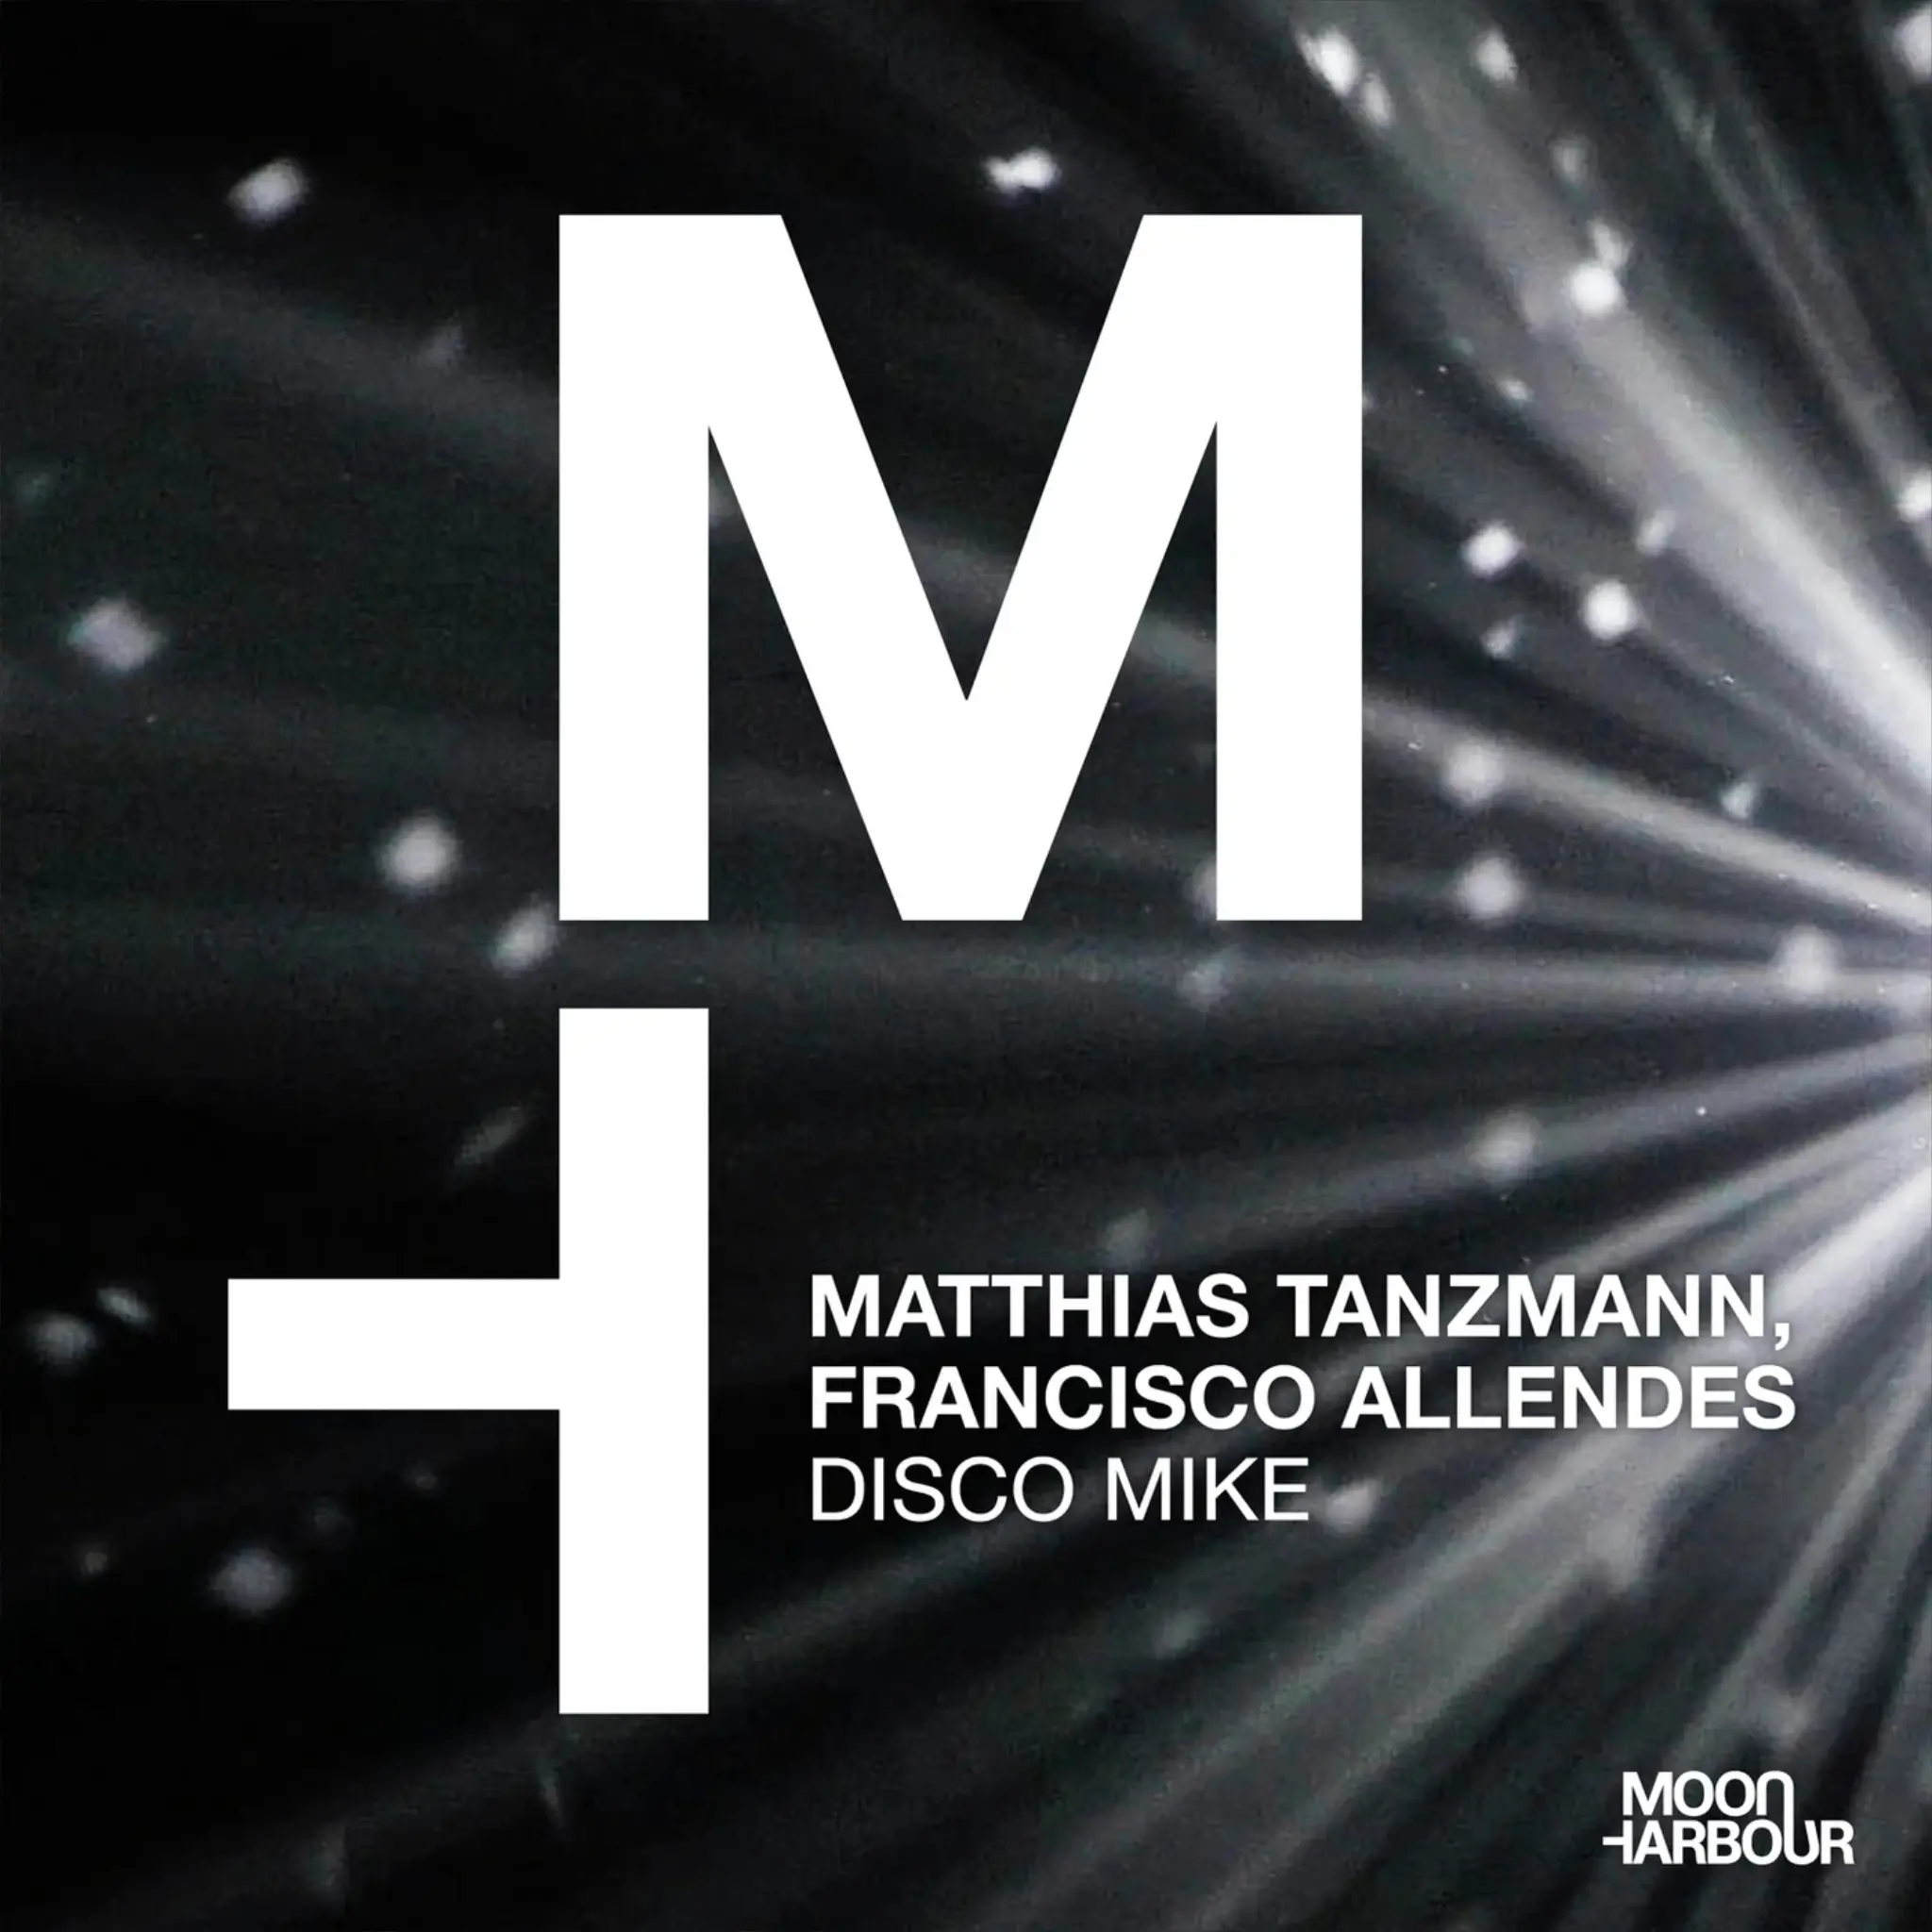 Matthias Tanzmann, Francisco Allendes - Disco Mike